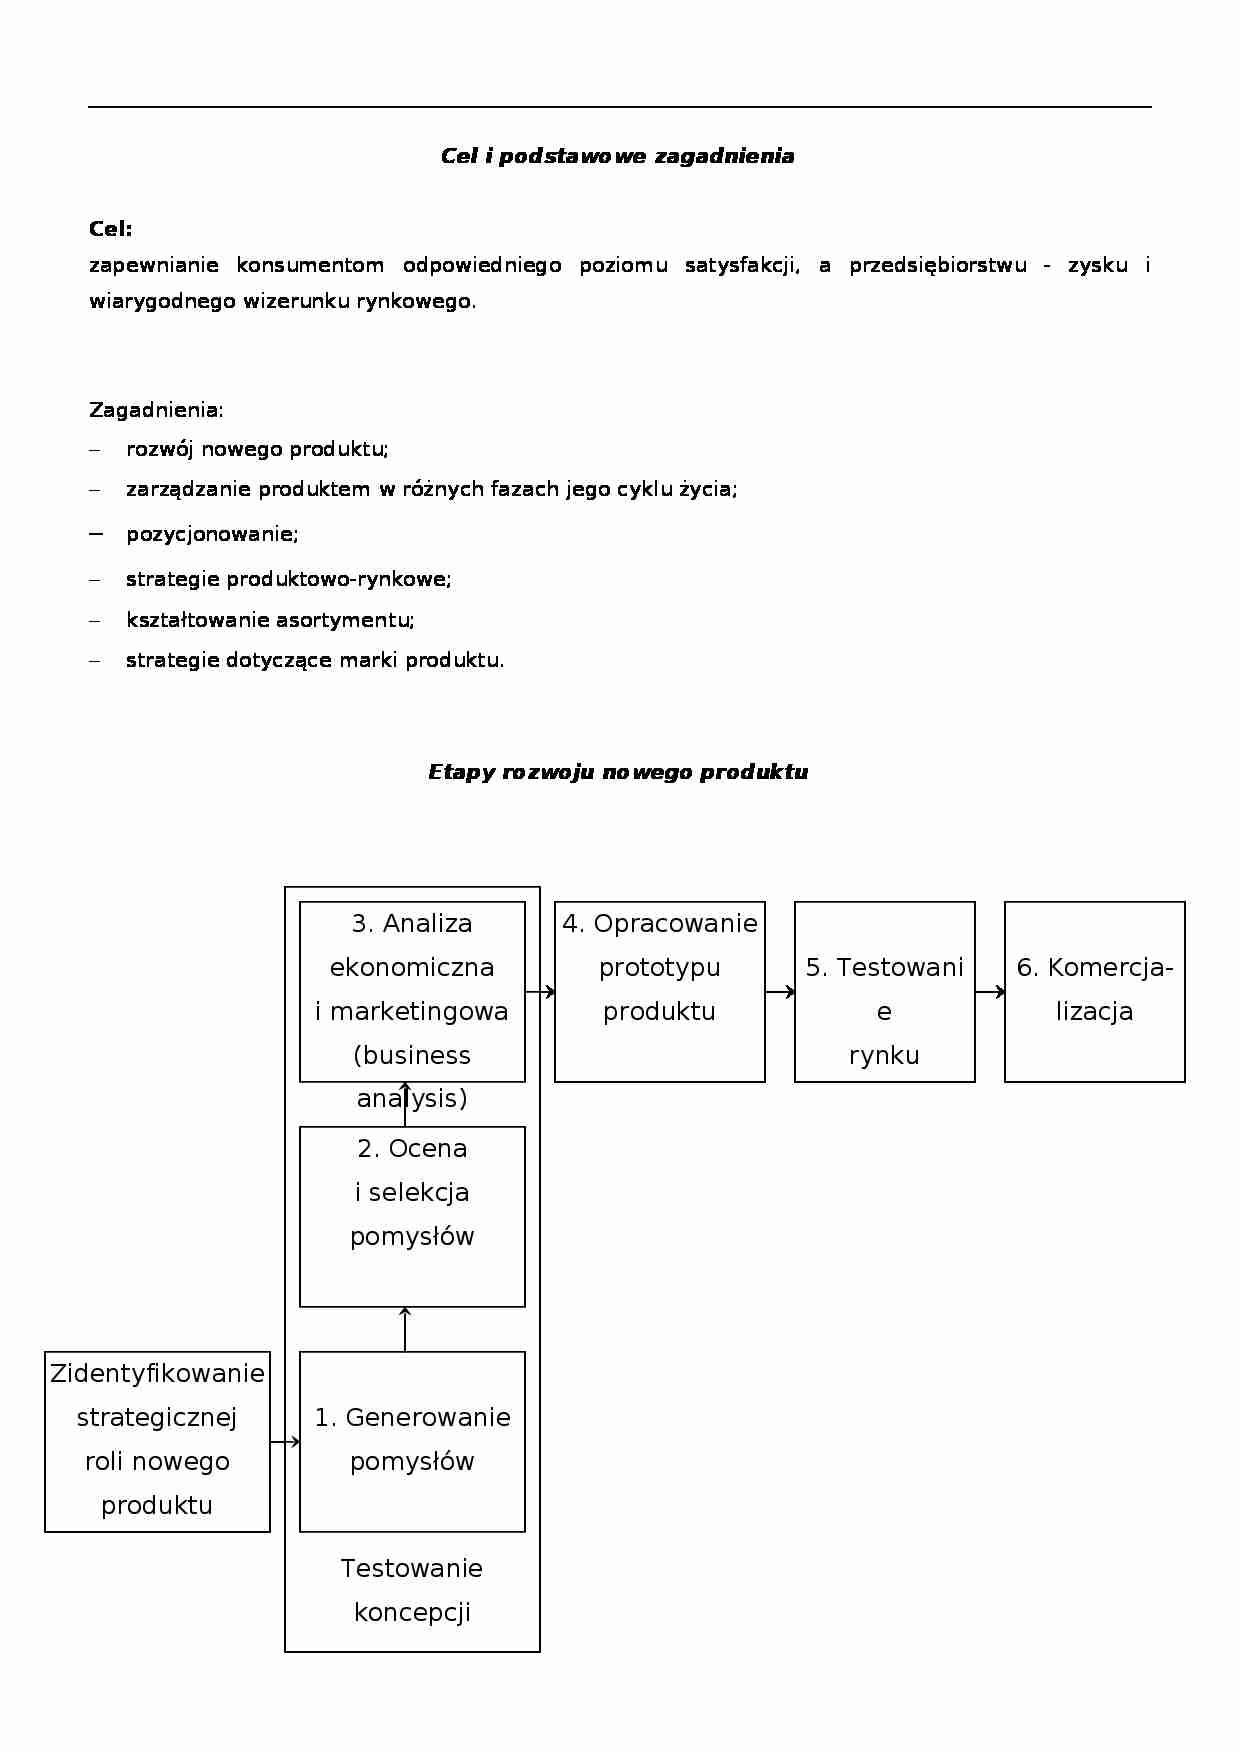 Zarządzanie produktem - podstawowe zagadnienia  - strona 1